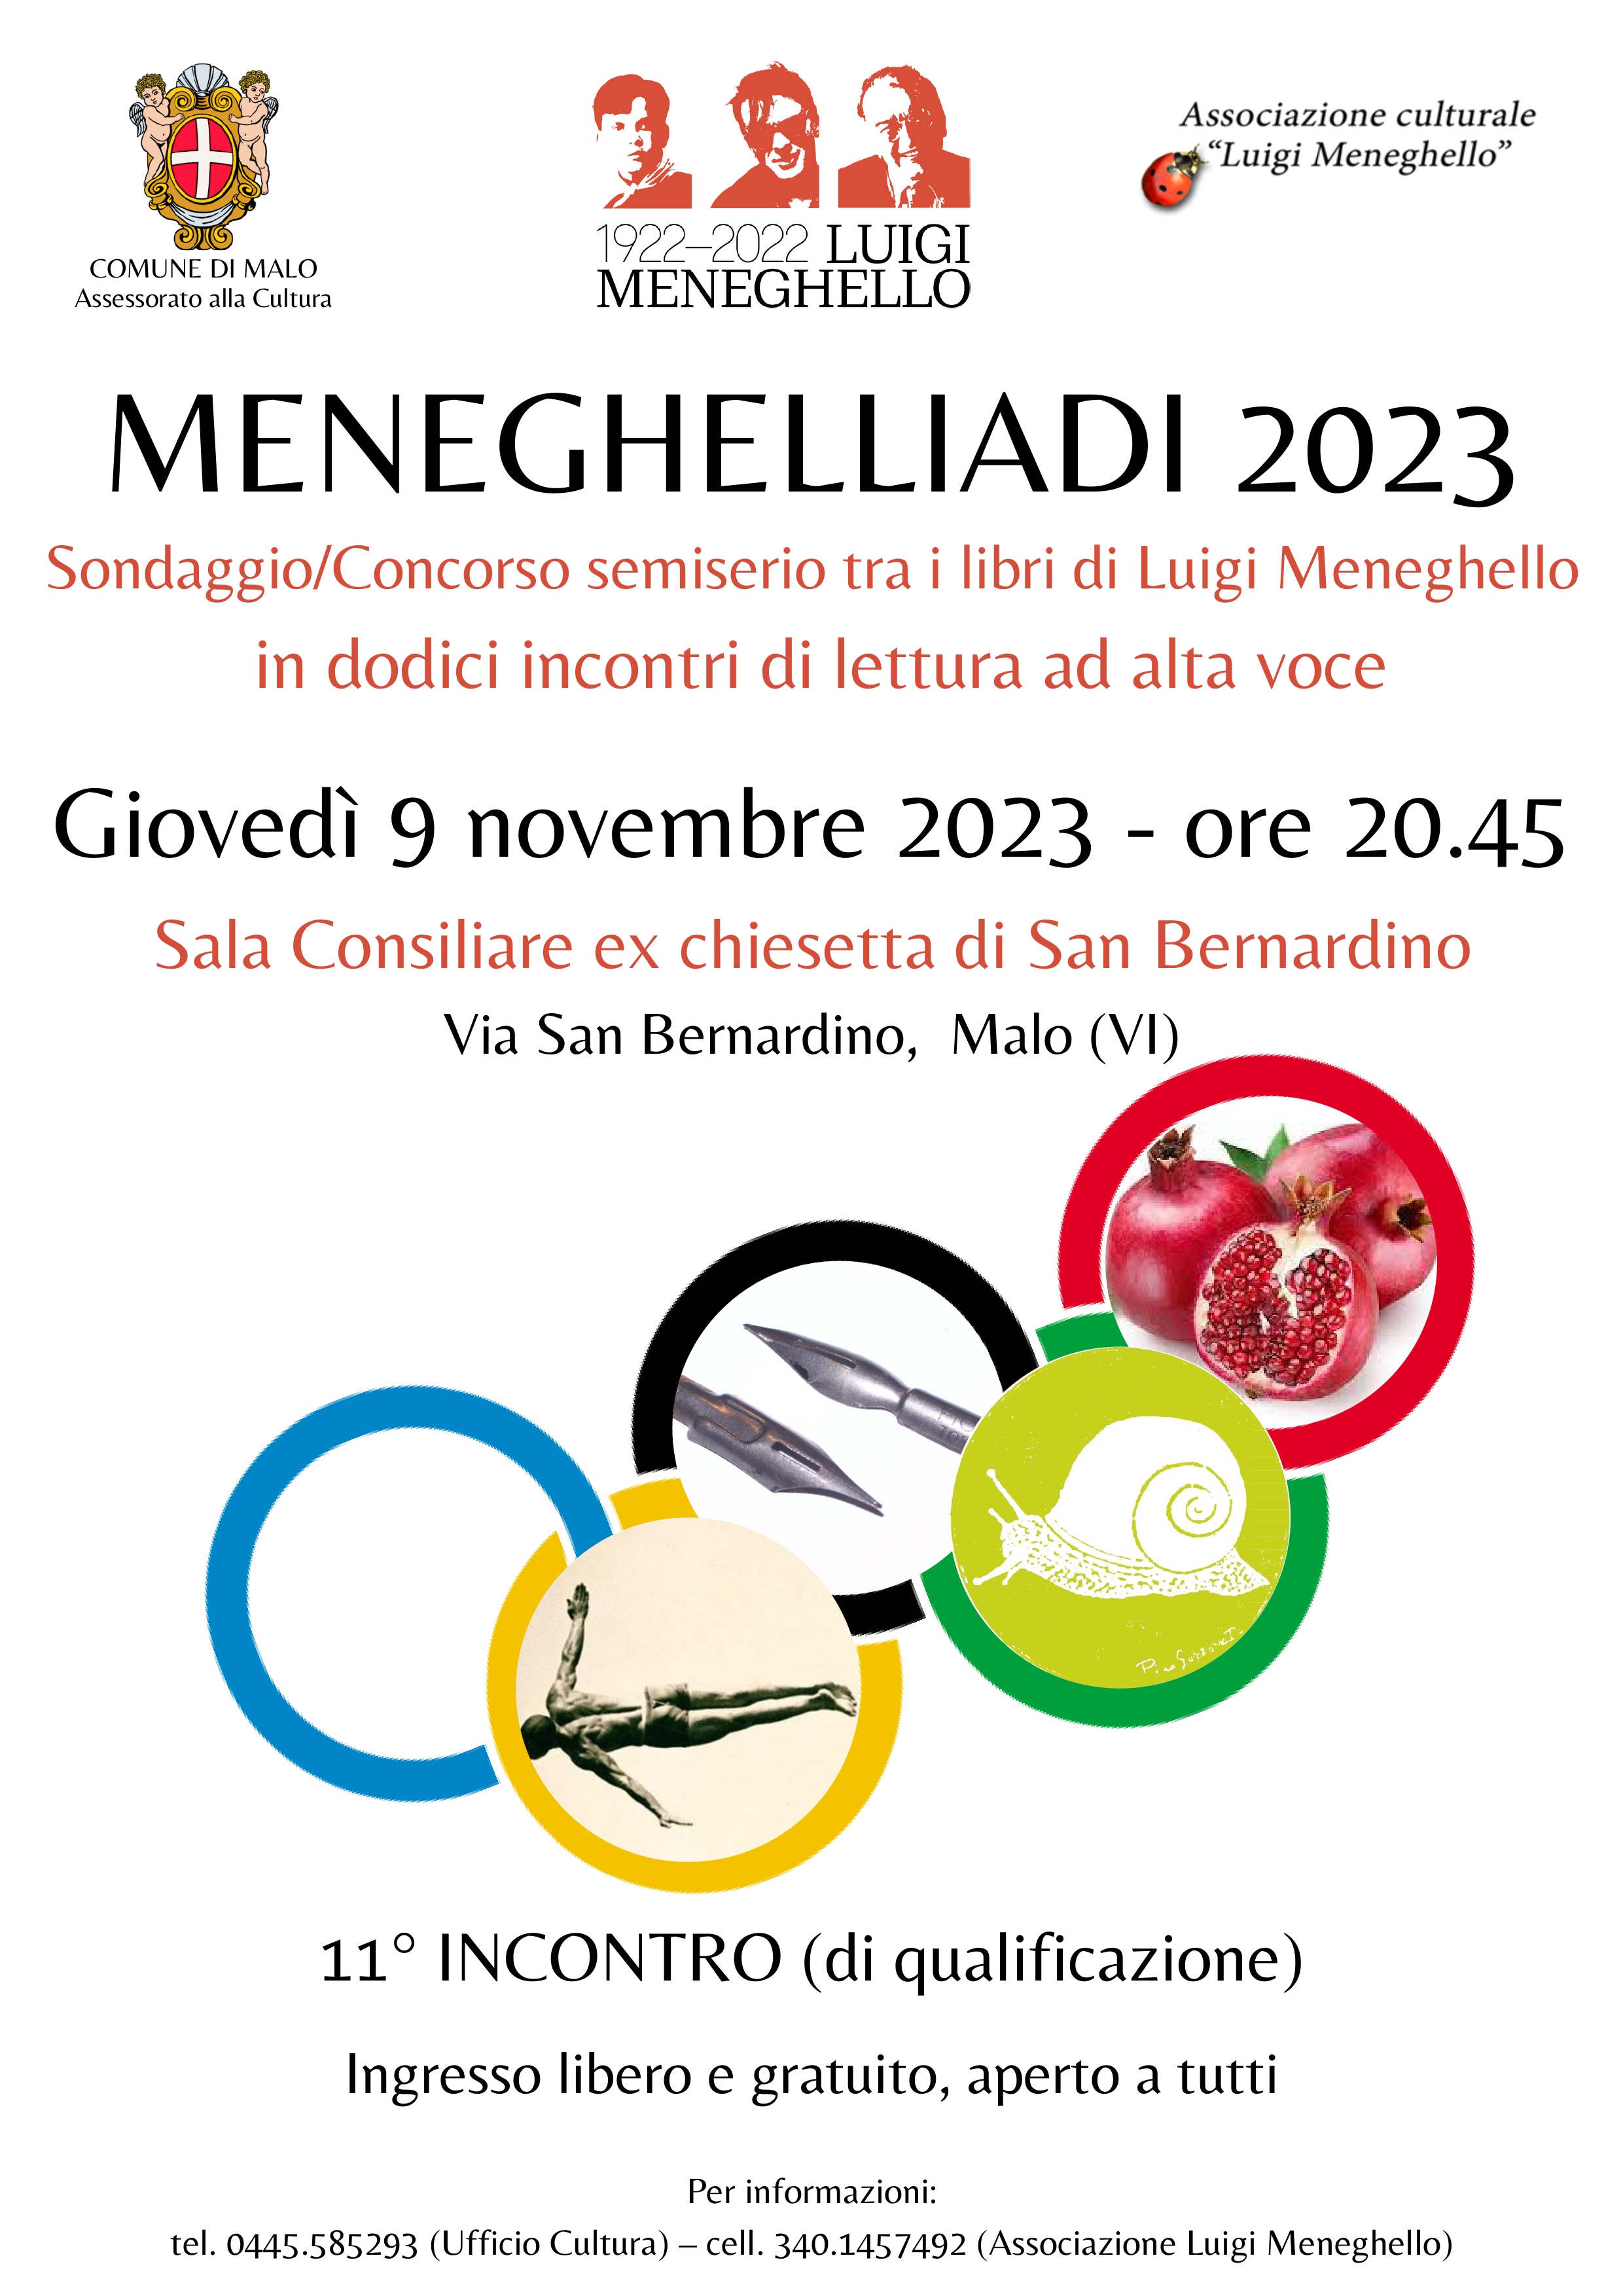 Meneghelliadi 2023. 11° incontro (di qualificazione)